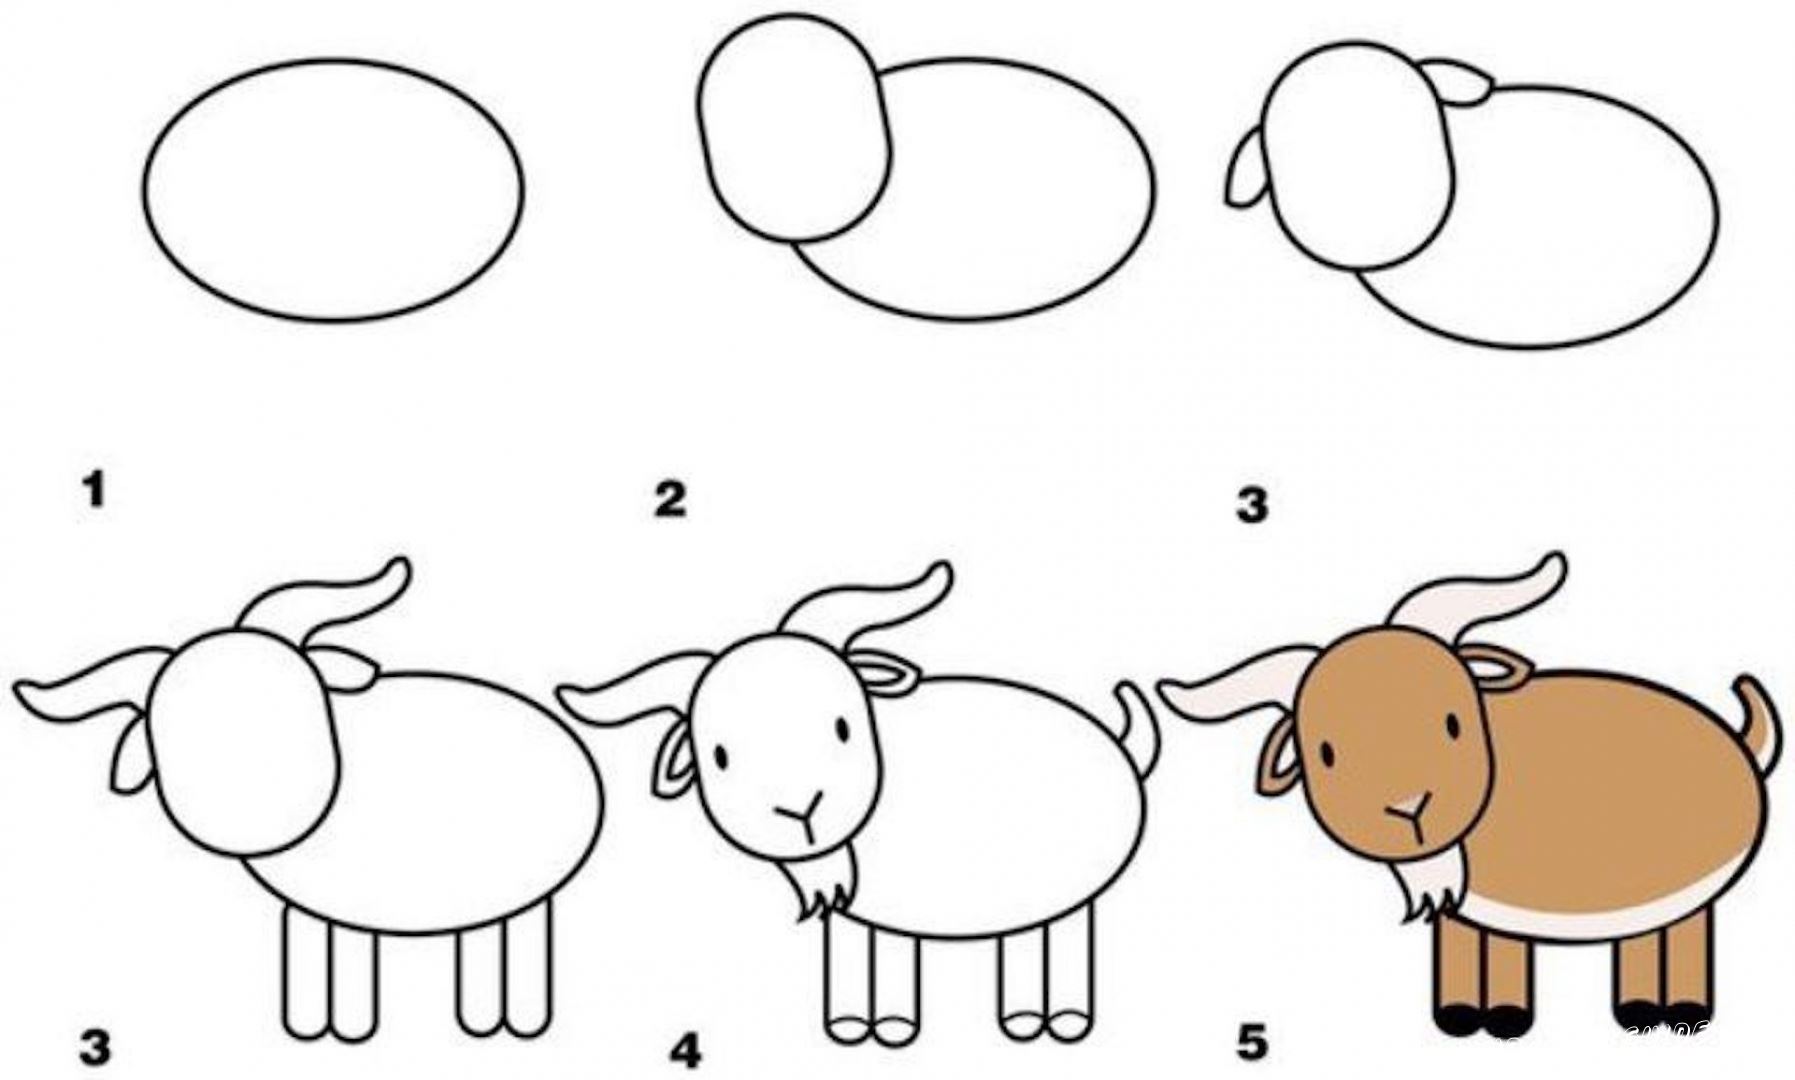 Как рисовать животных пошагово научить ребенка в 5 лет